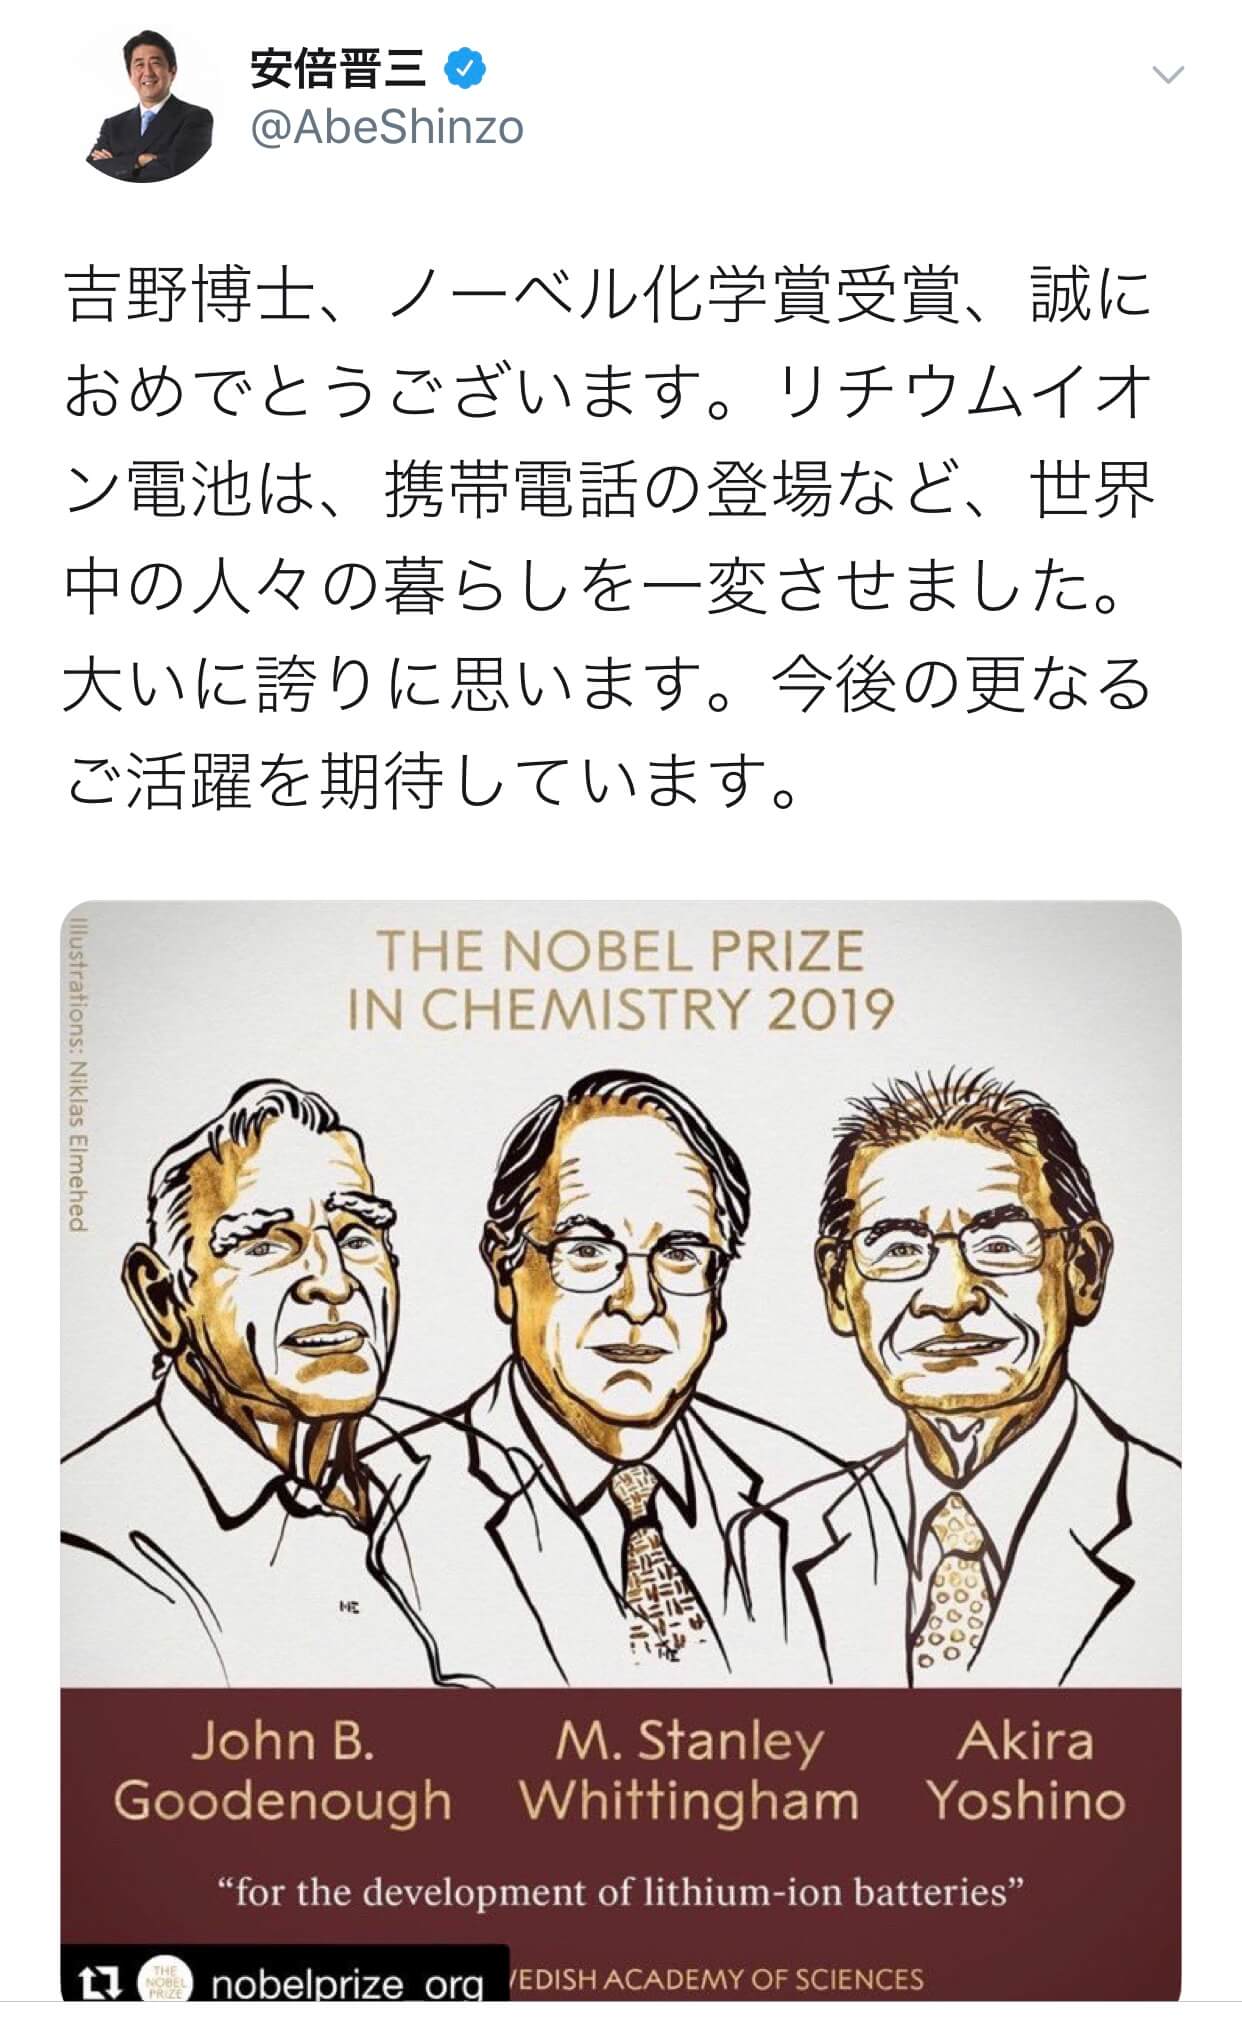 吉野彰荣获2019年诺贝尔化学奖，日本人获奖人数达到27人